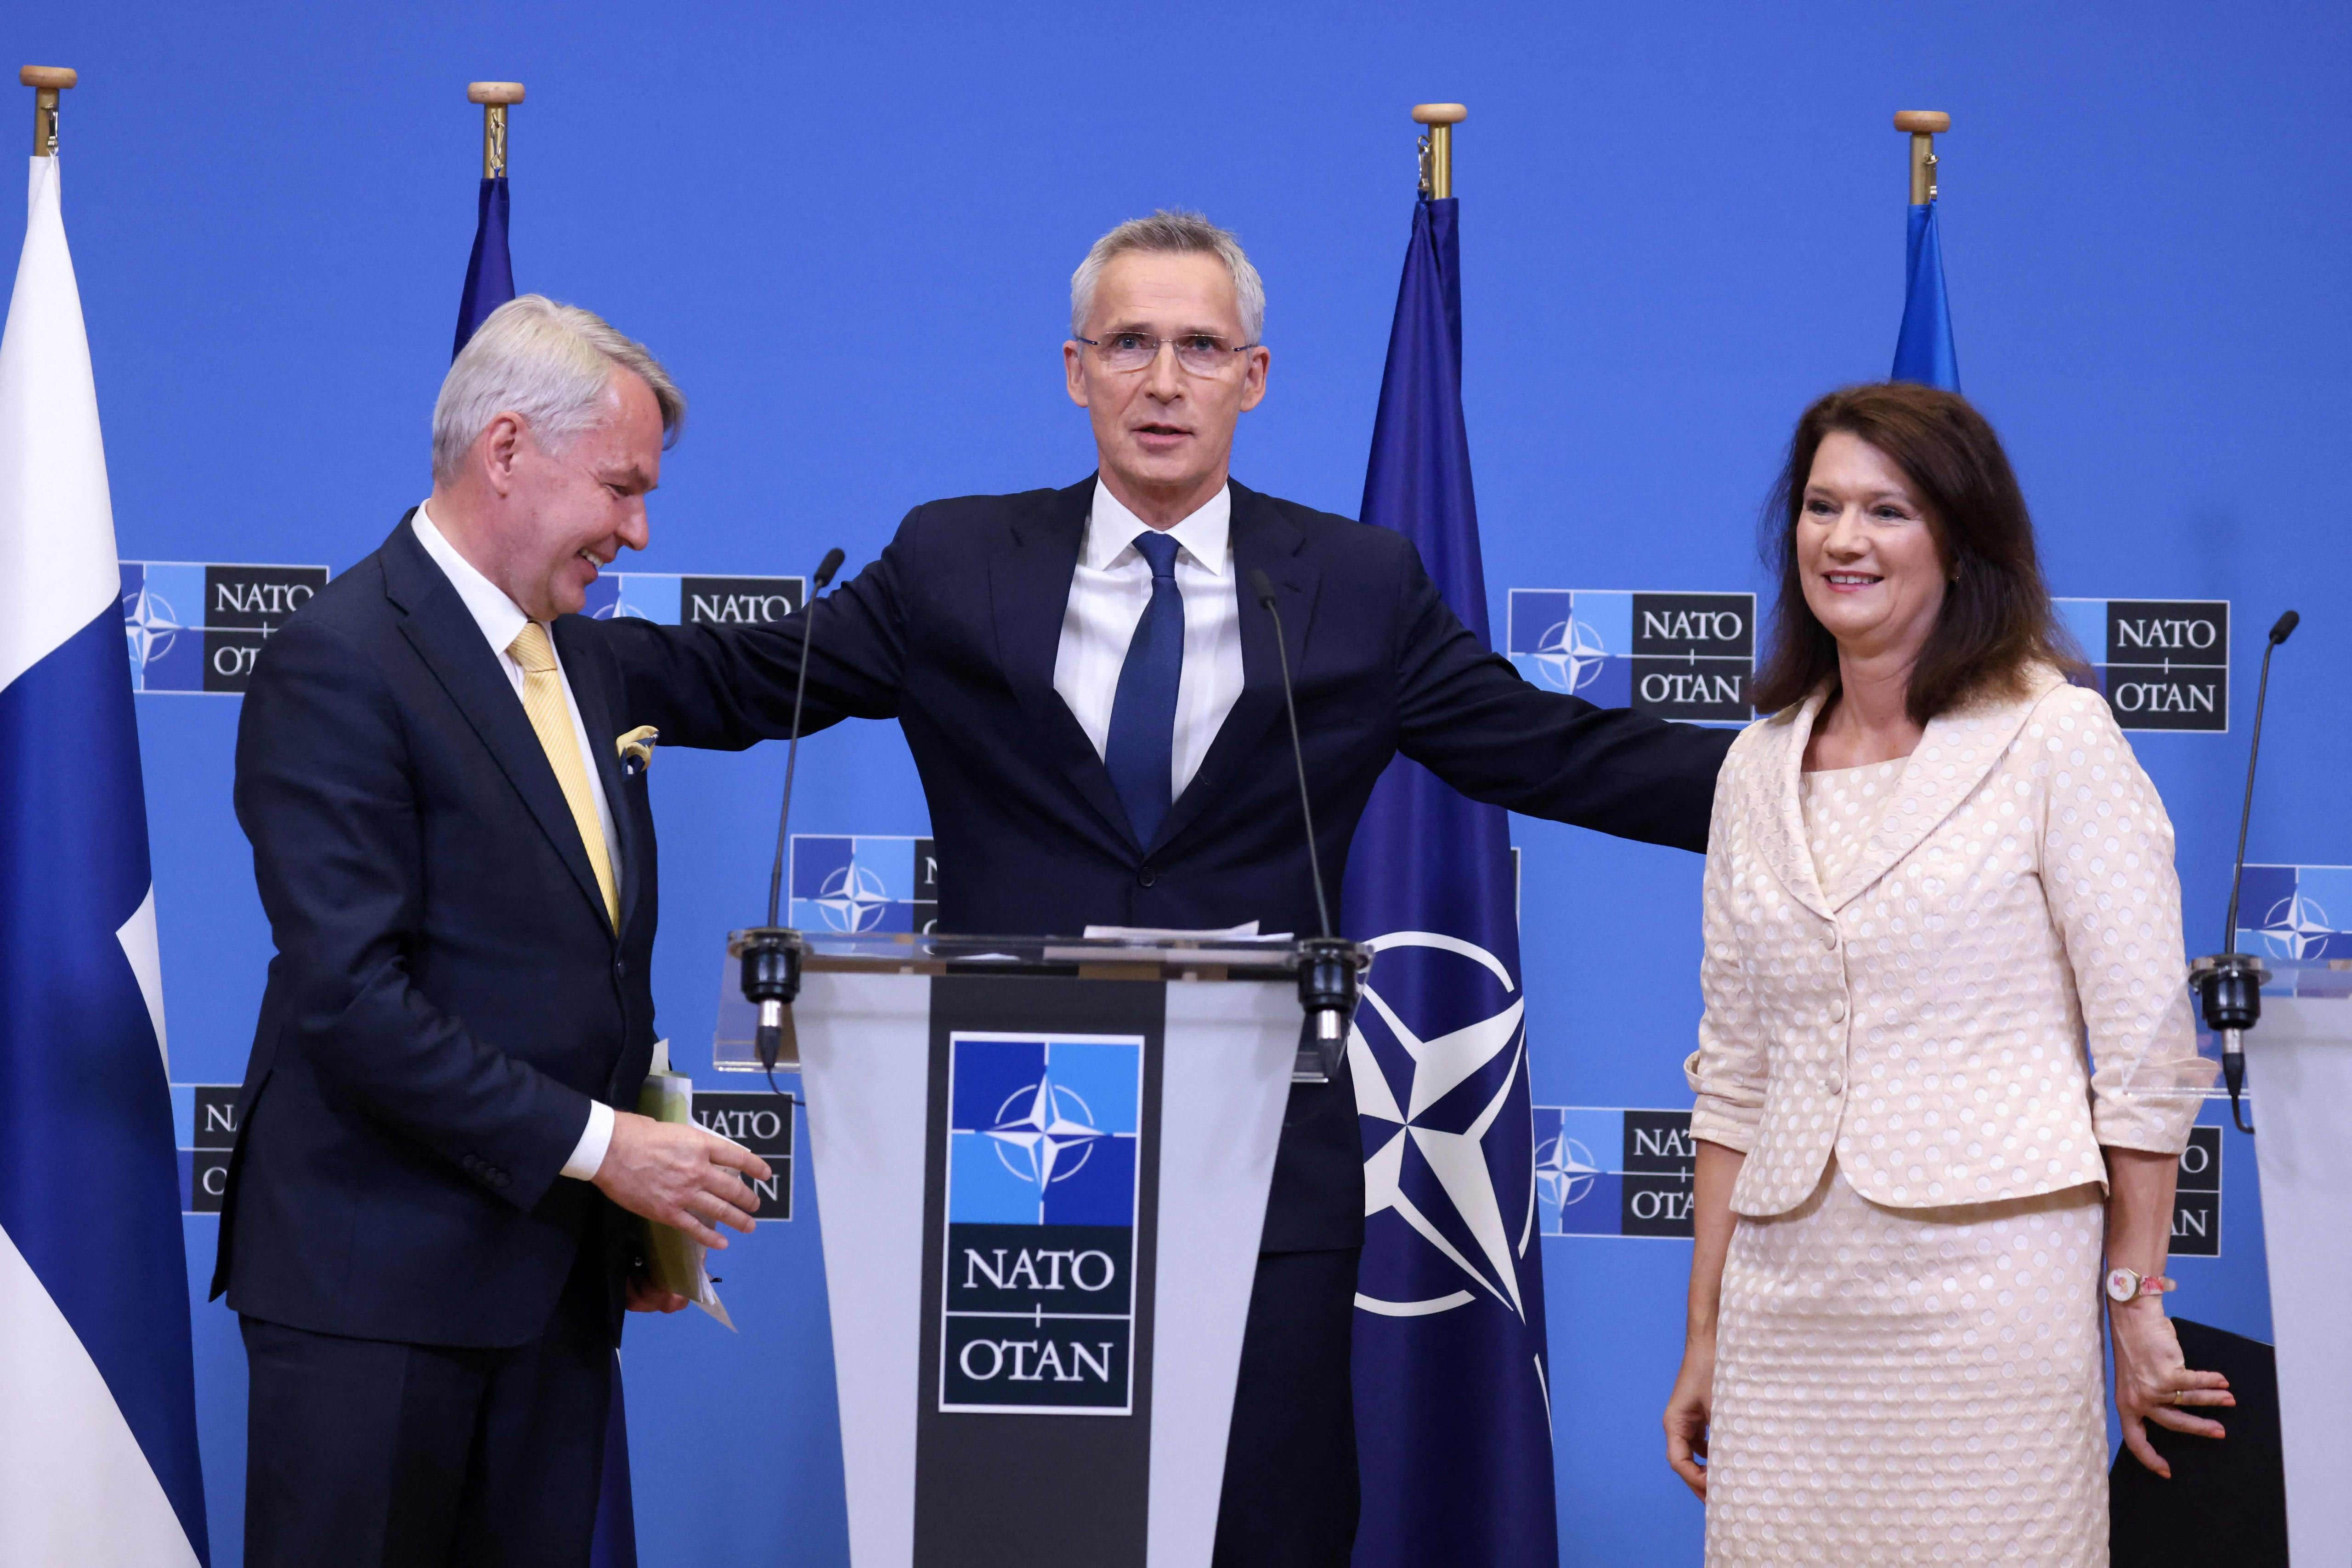 Los primeros países en ratificar la adhesión de Finlandia a la OTAN